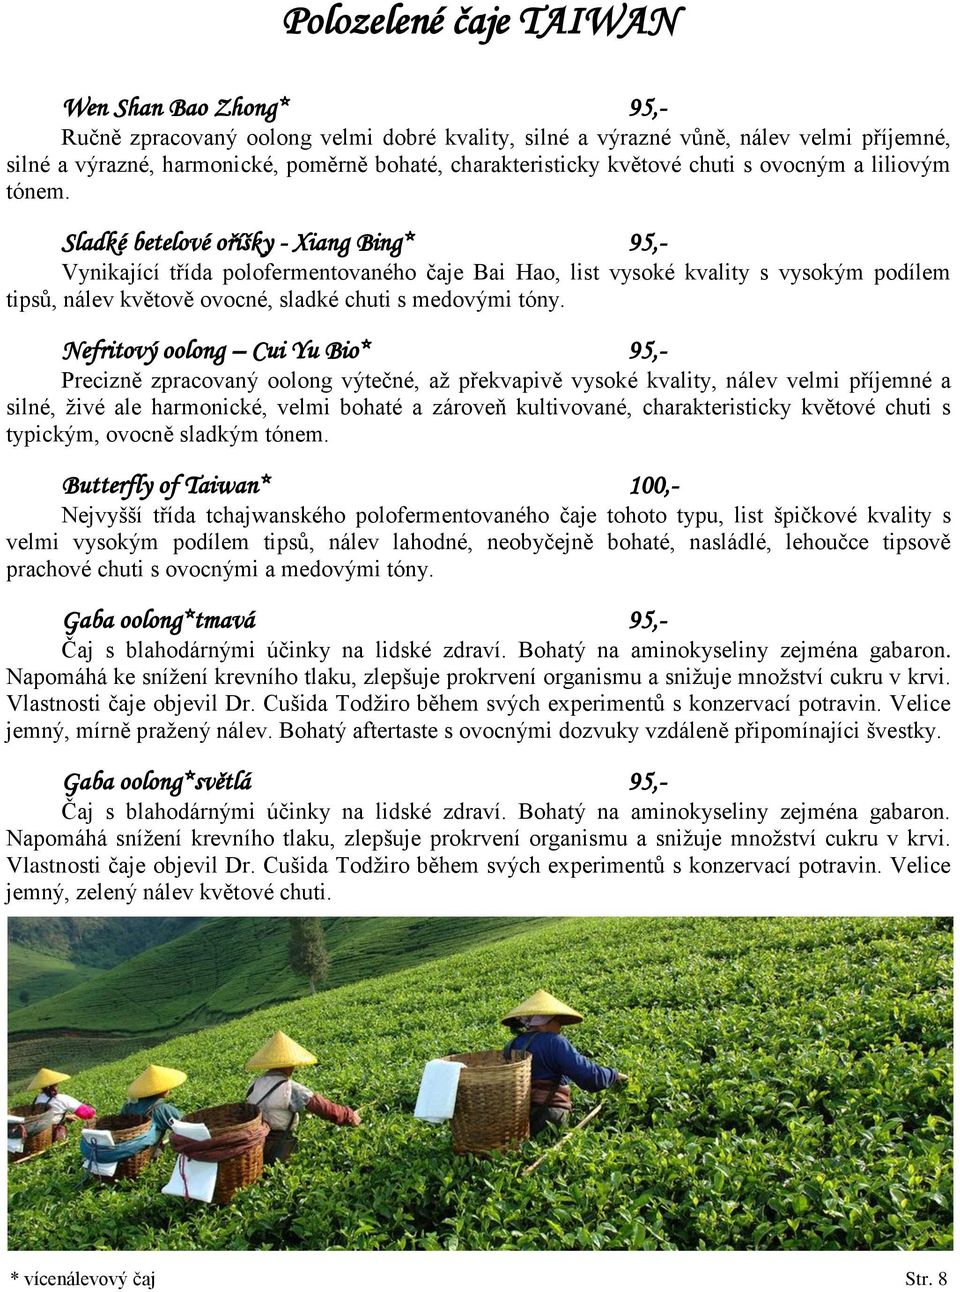 Sladké betelové oříšky - Xiang Bing* 95,- Vynikající třída polofermentovaného čaje Bai Hao, list vysoké kvality s vysokým podílem tipsů, nálev květově ovocné, sladké chuti s medovými tóny.